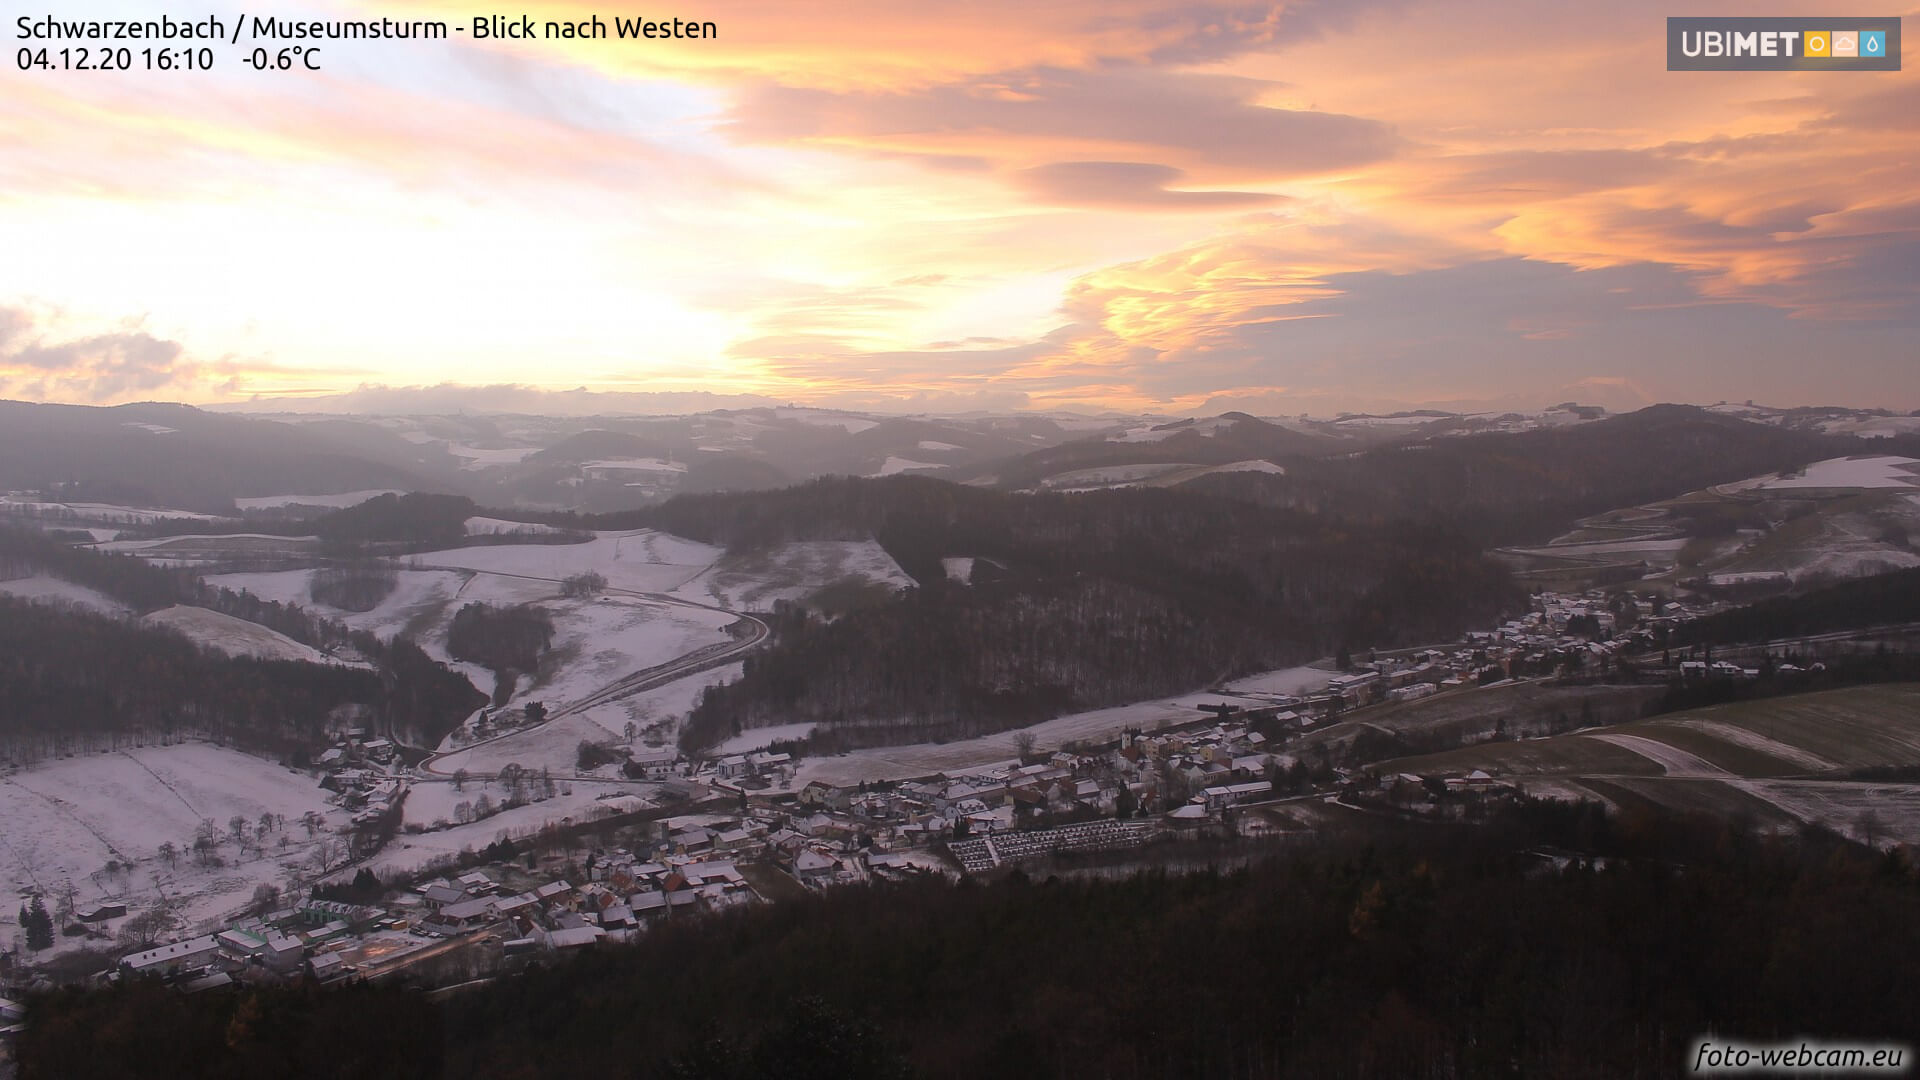 Der abendliche Himmel über Schwarzenbach (NÖ) am 4.12.2020. Quelle: foto-webcam.eu